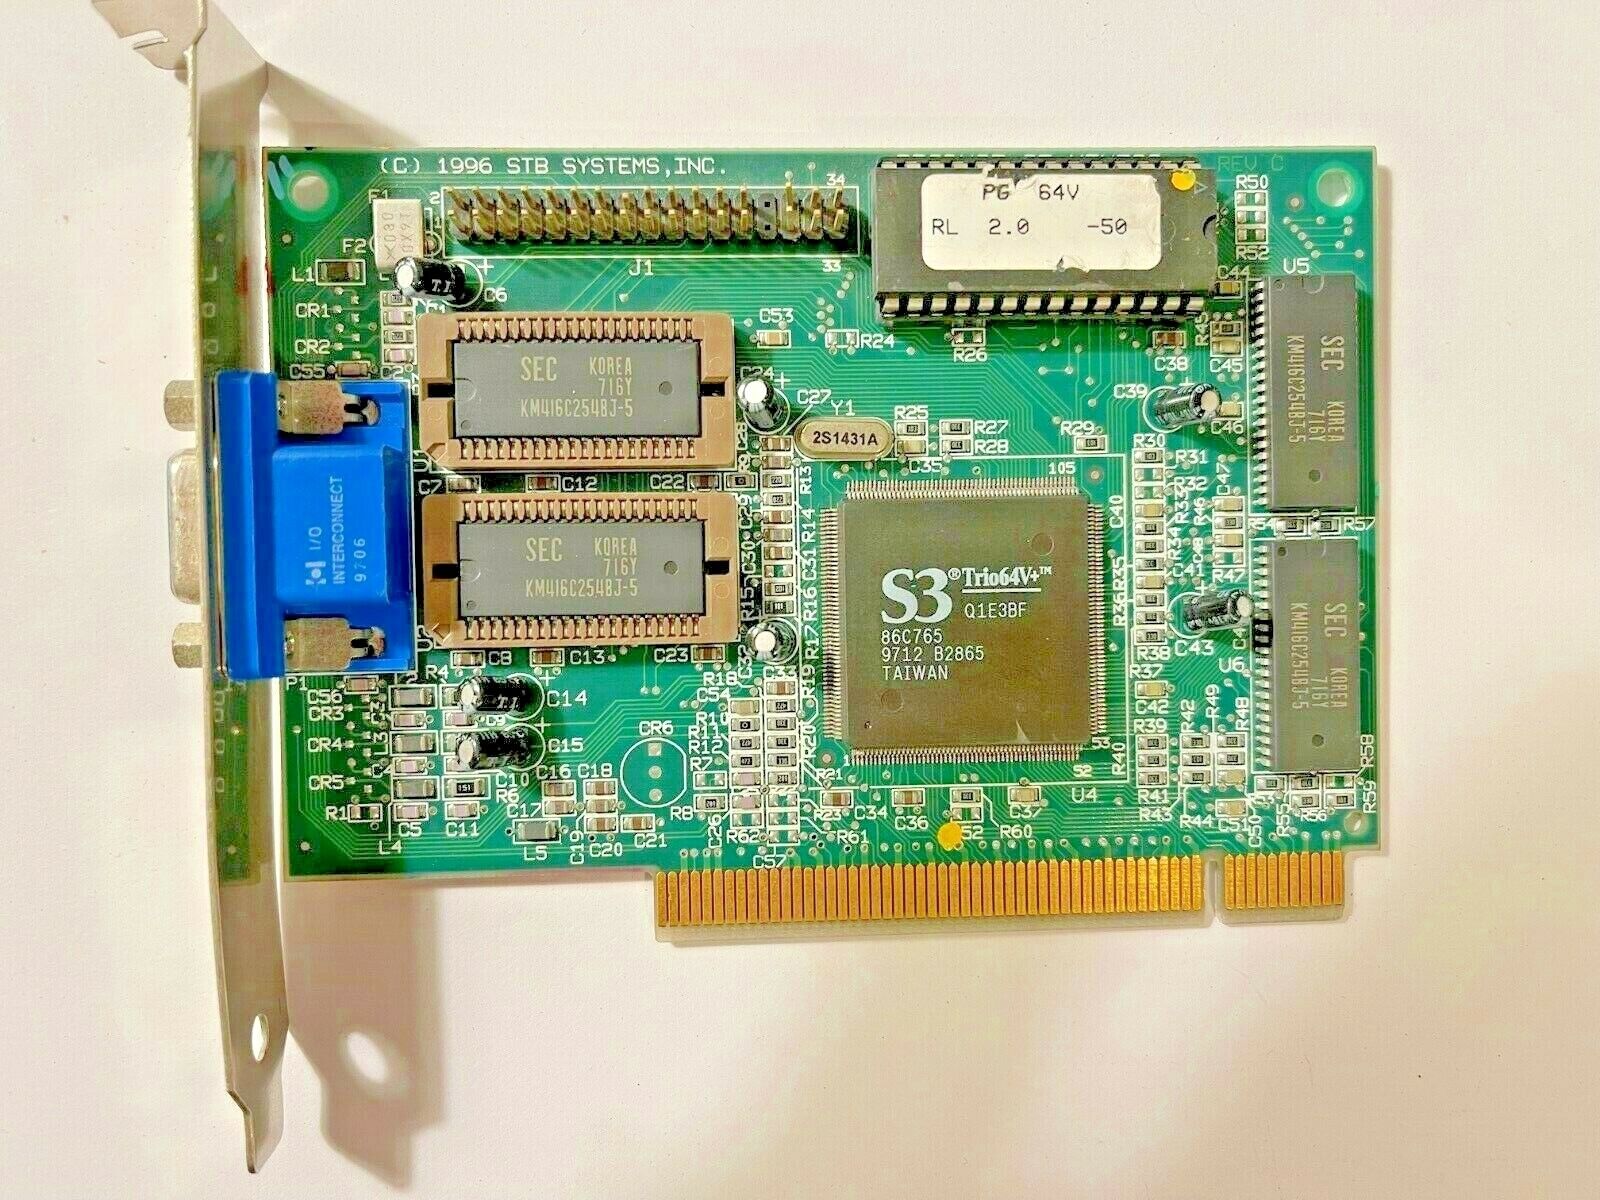 RARE VINTAGE 1997 STB SYSTEMS S3 TRIO64V+ POWERGRAPH PG64V PCI VGA CARD MXB2